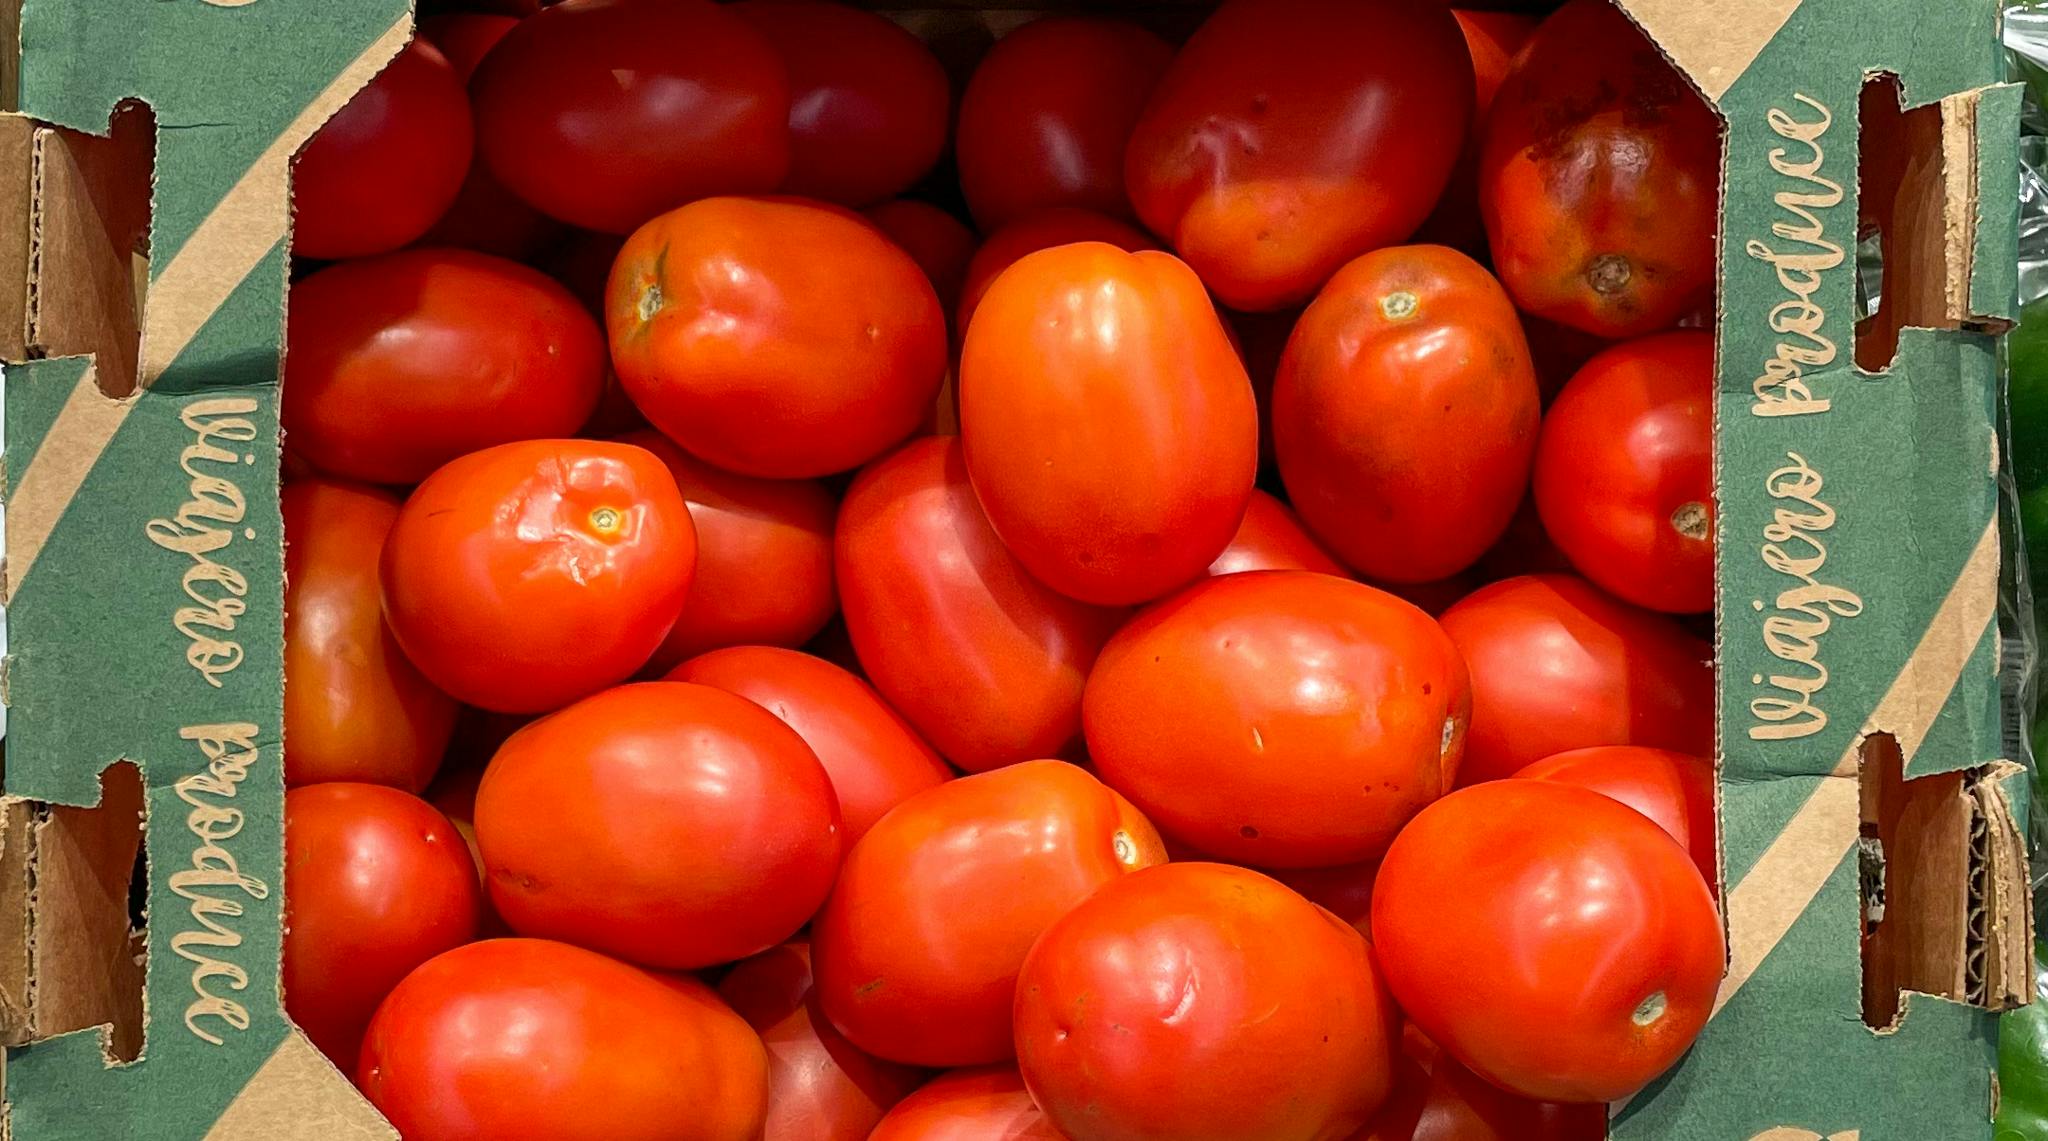 Roma tomatoes in a box at aldi